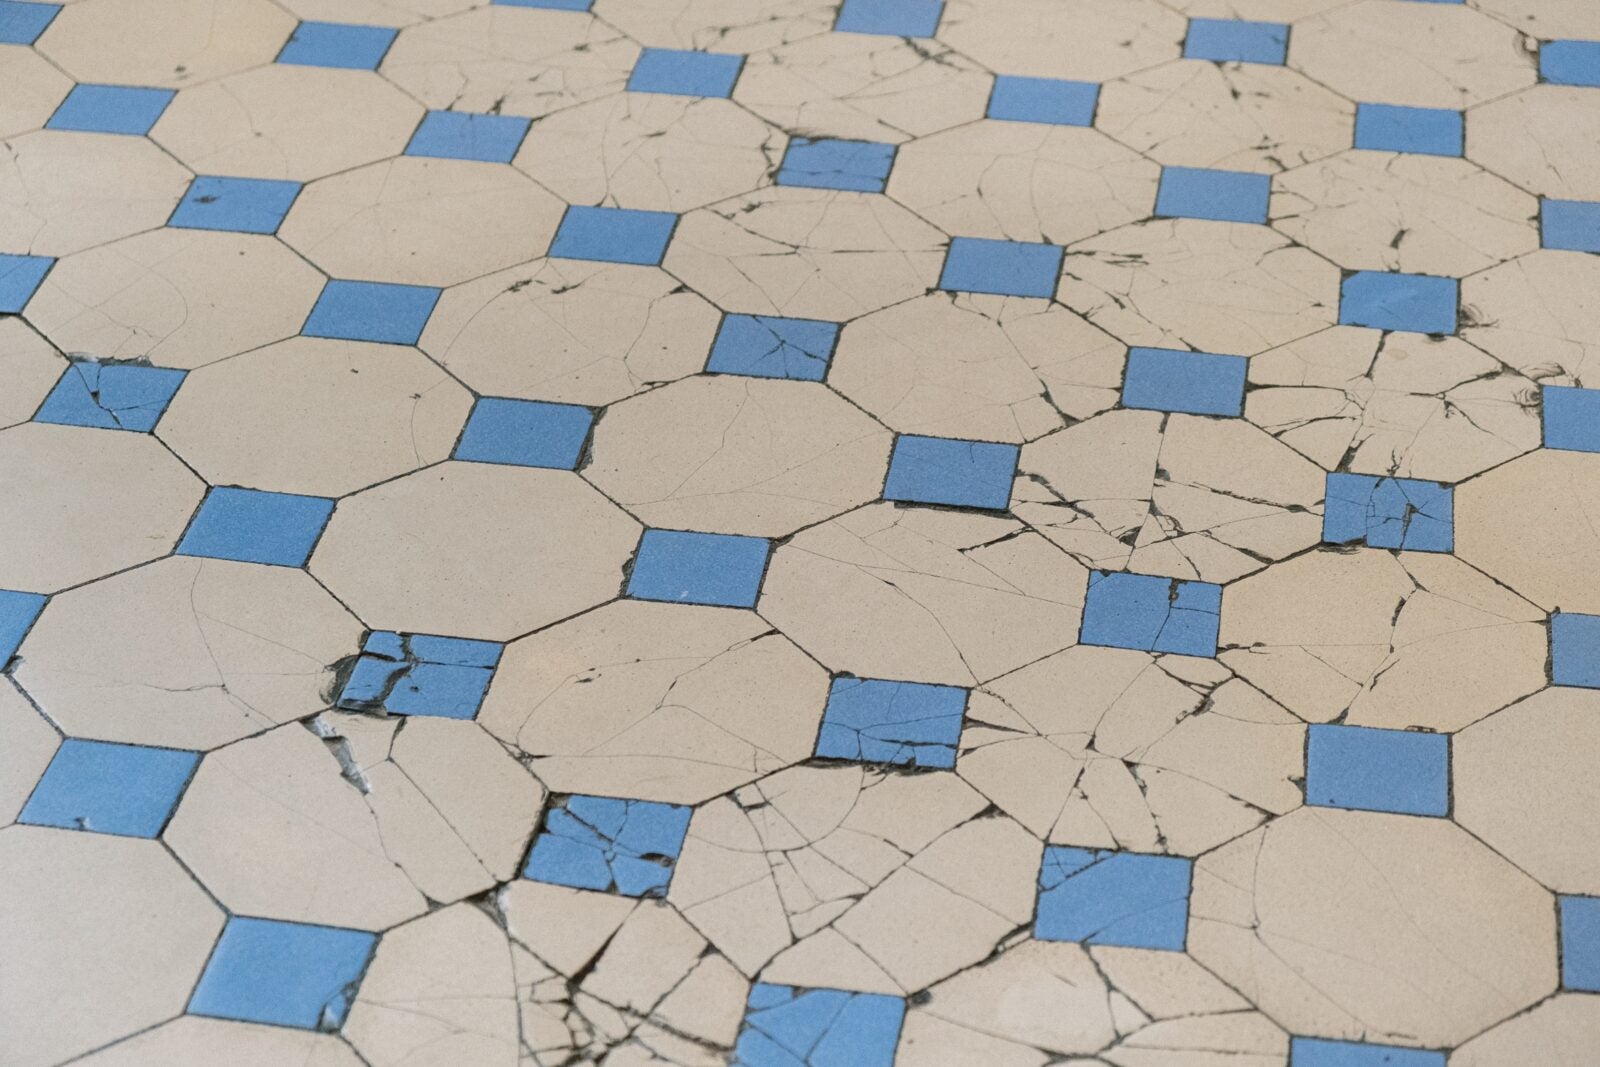 Cracked floor tiles.